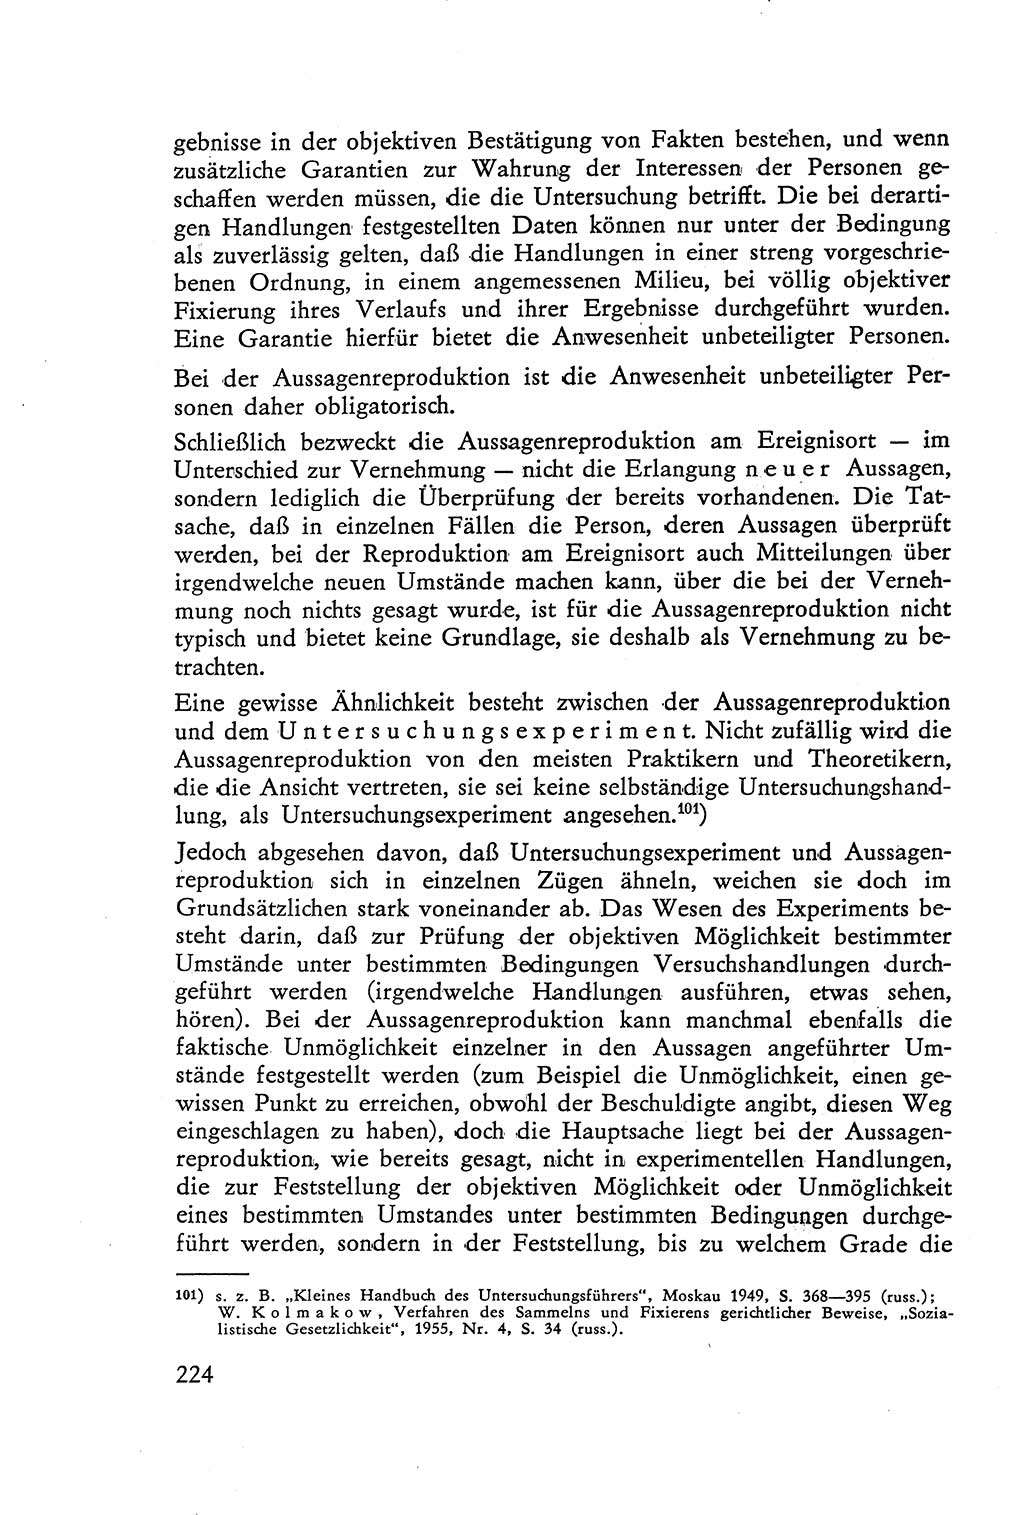 Die Vernehmung [Deutsche Demokratische Republik (DDR)] 1960, Seite 224 (Vern. DDR 1960, S. 224)